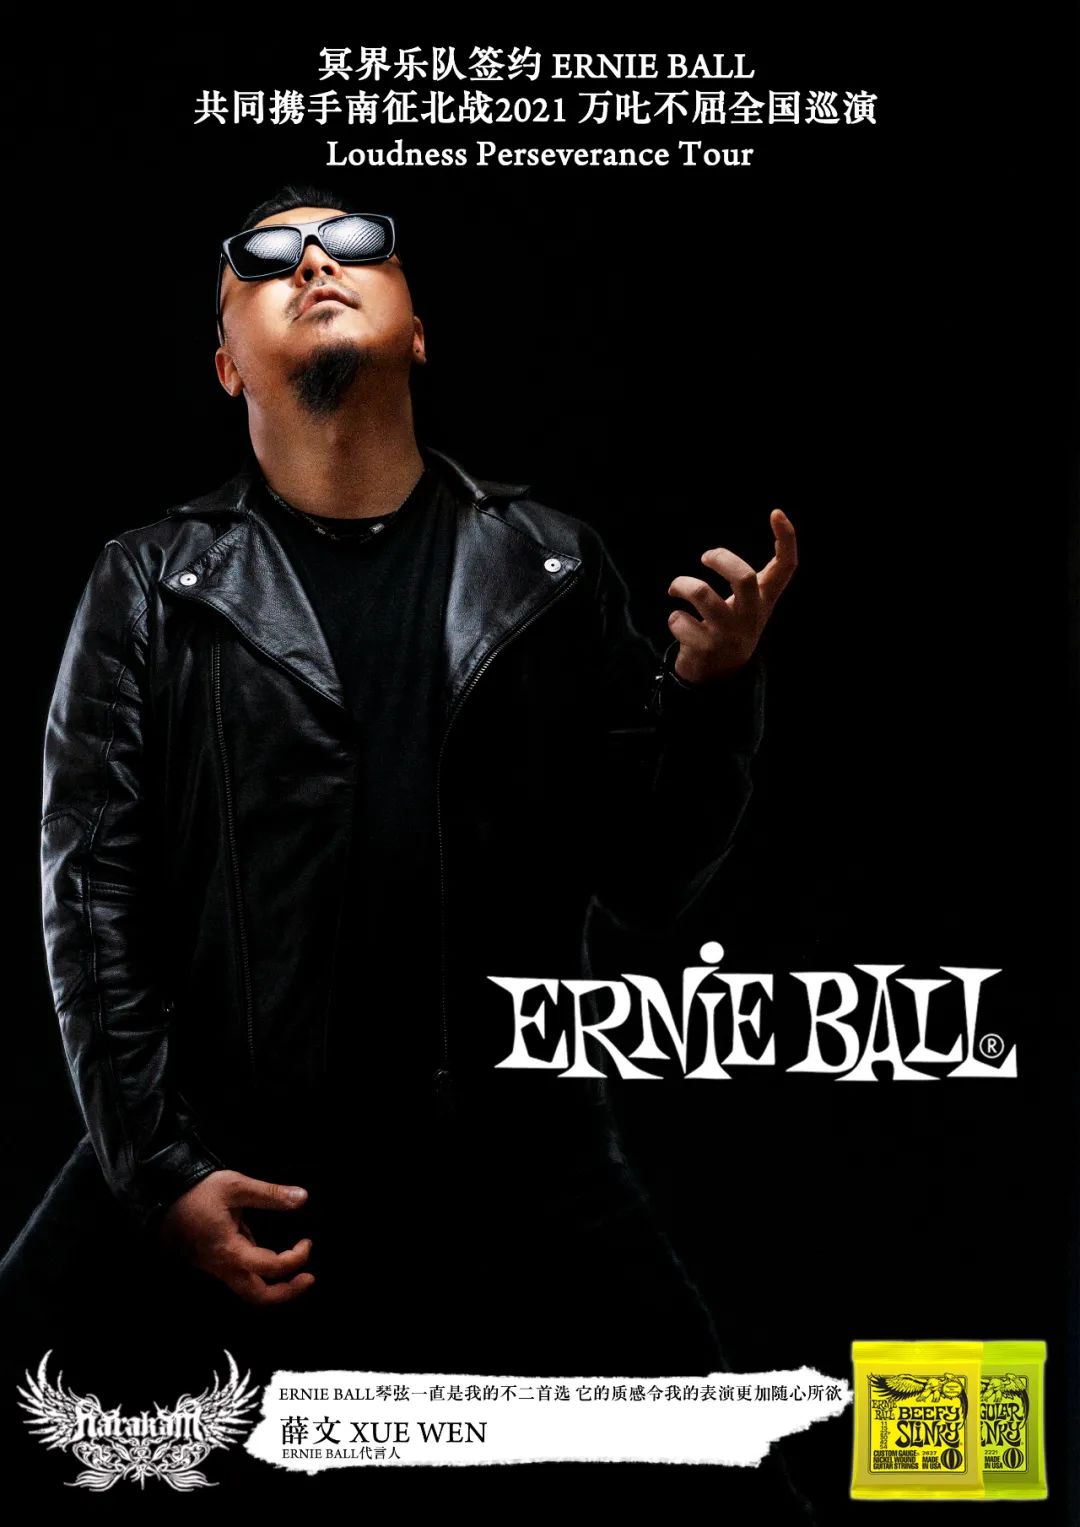 冥界乐队正式签约ALGAM CHINA成为Ernie Ball中国区代言艺人！！